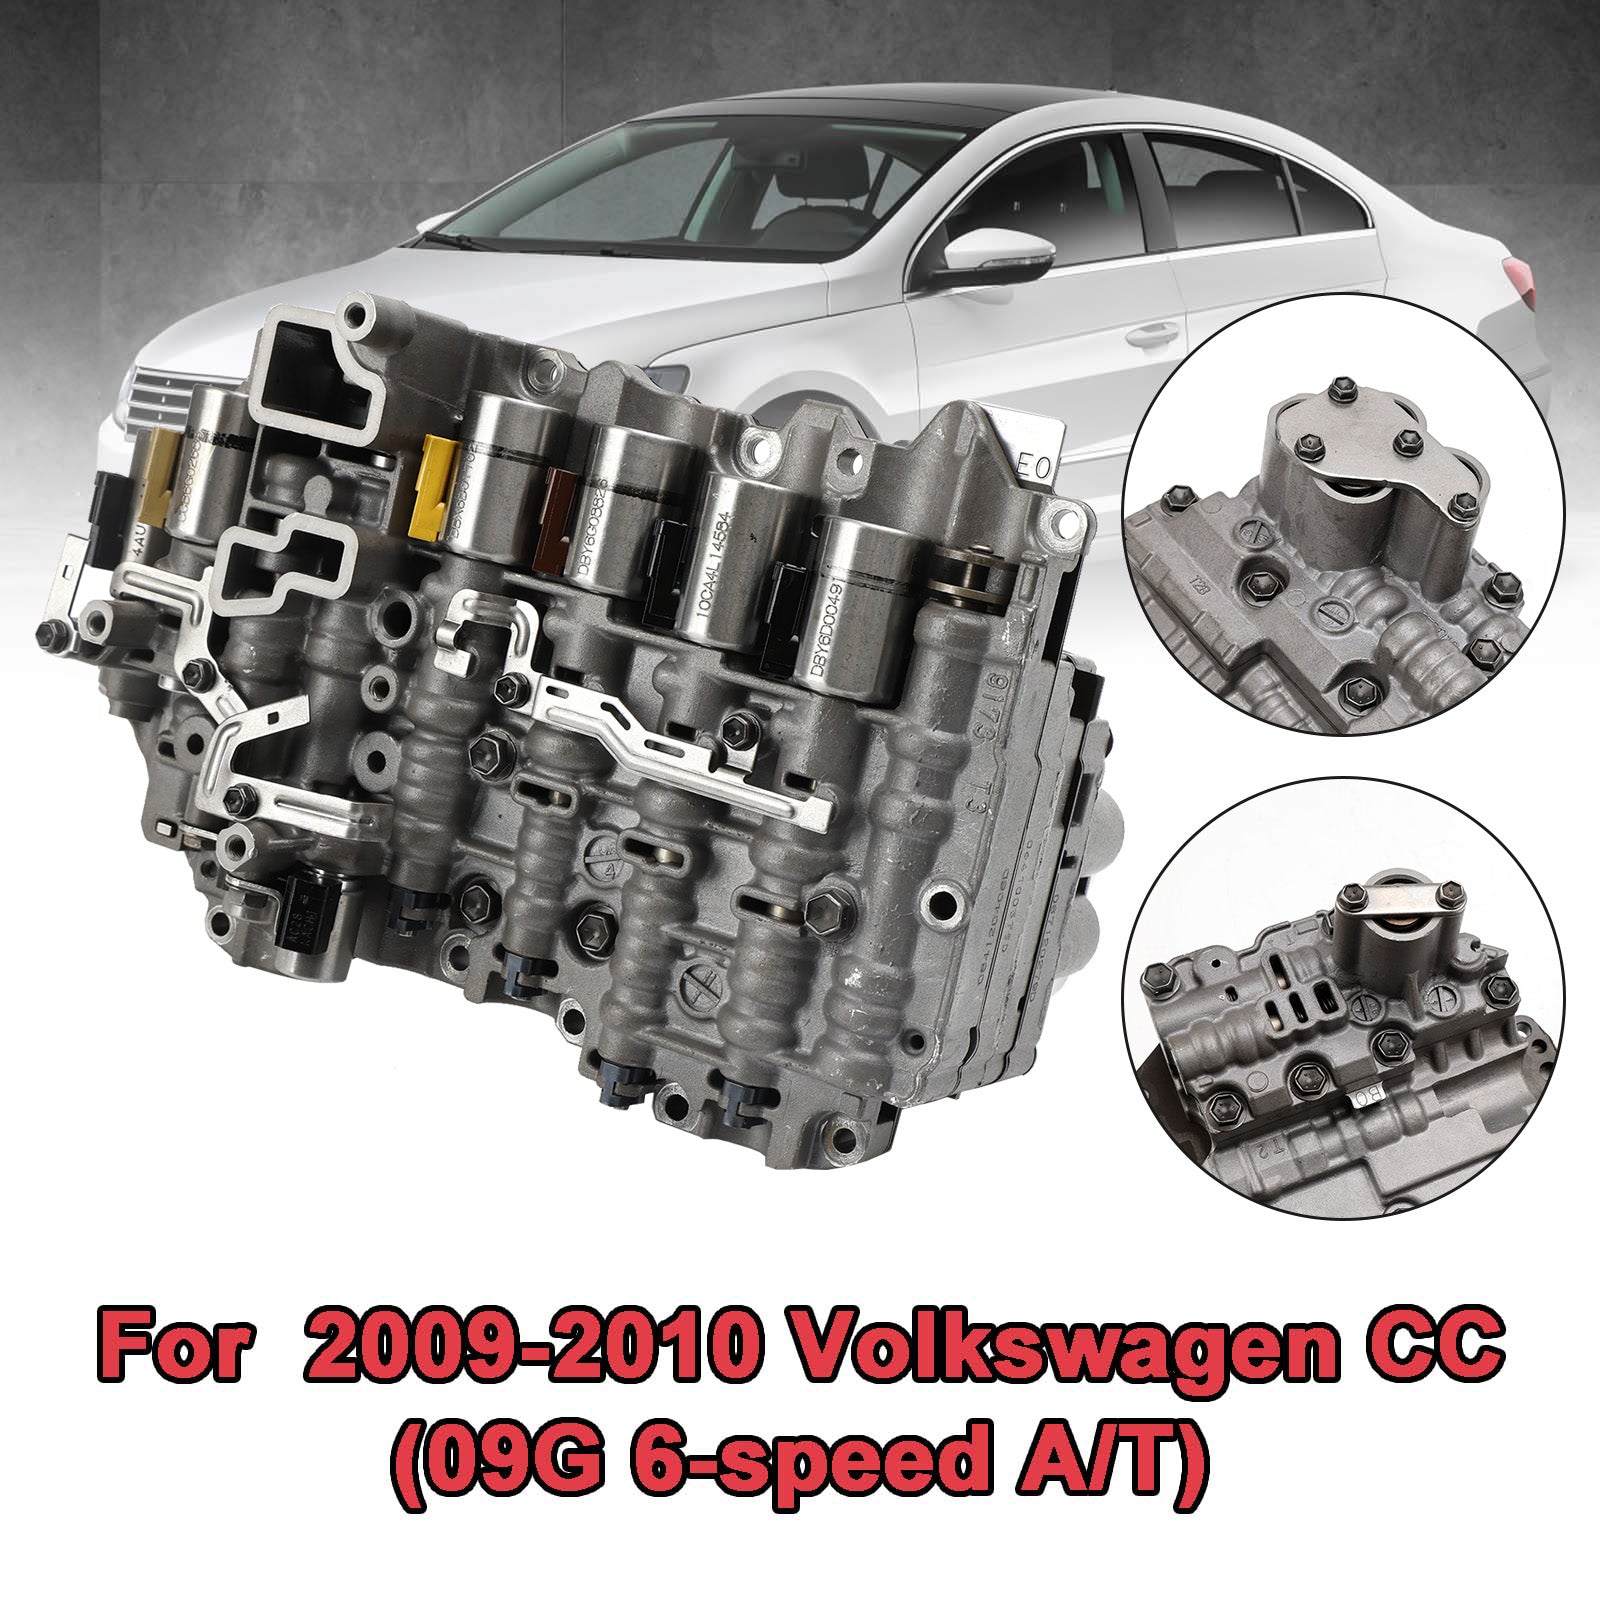 Corps de soupape de transmission automatique 09G TF-60SN pour VW Golf Passat Toura